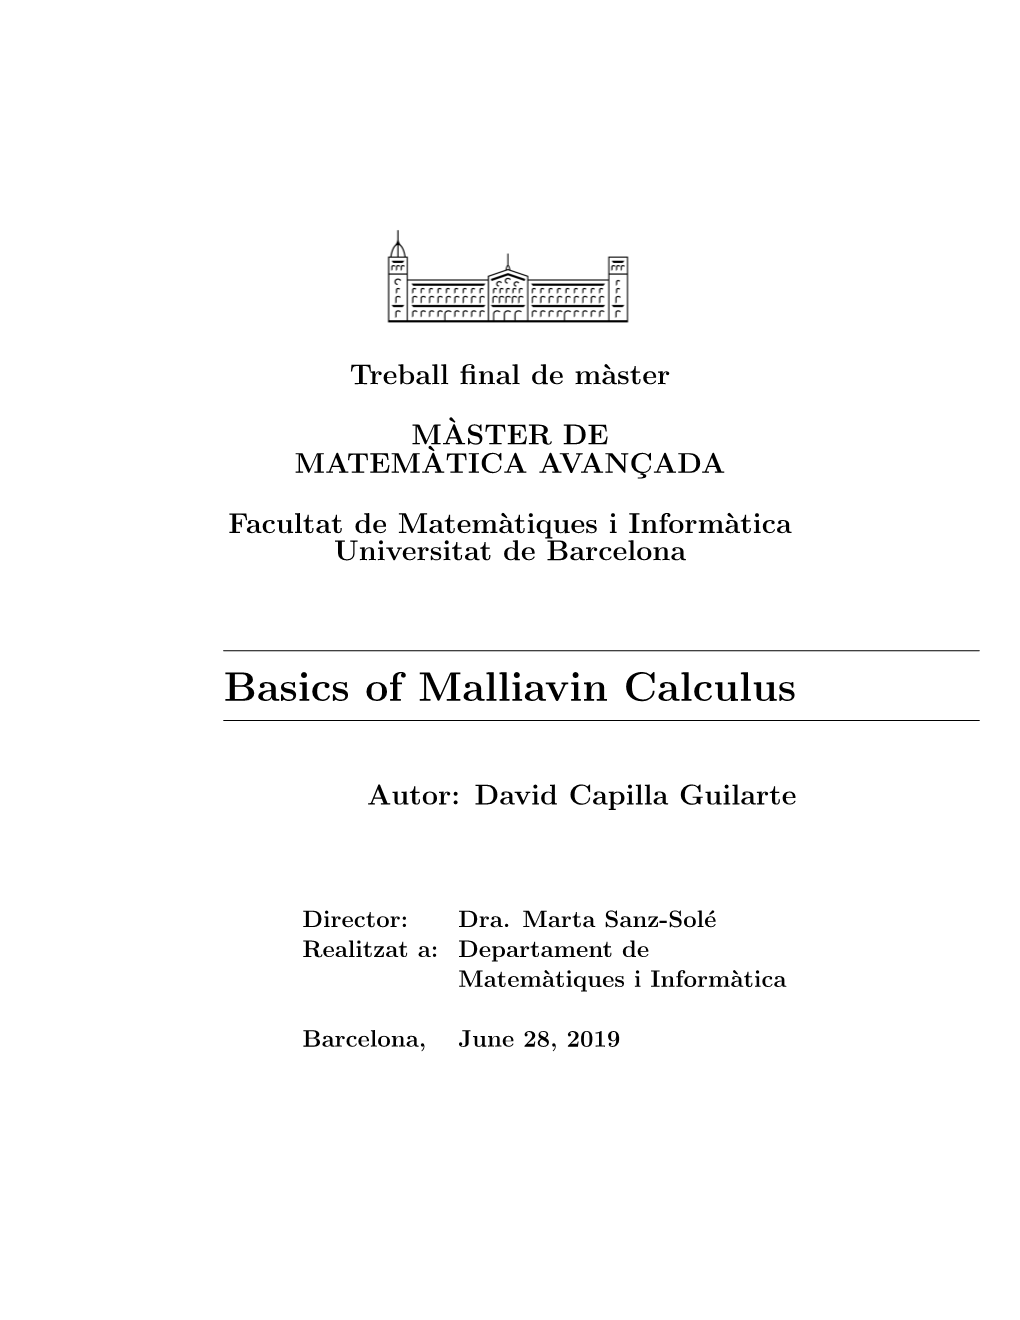 Basics of Malliavin Calculus